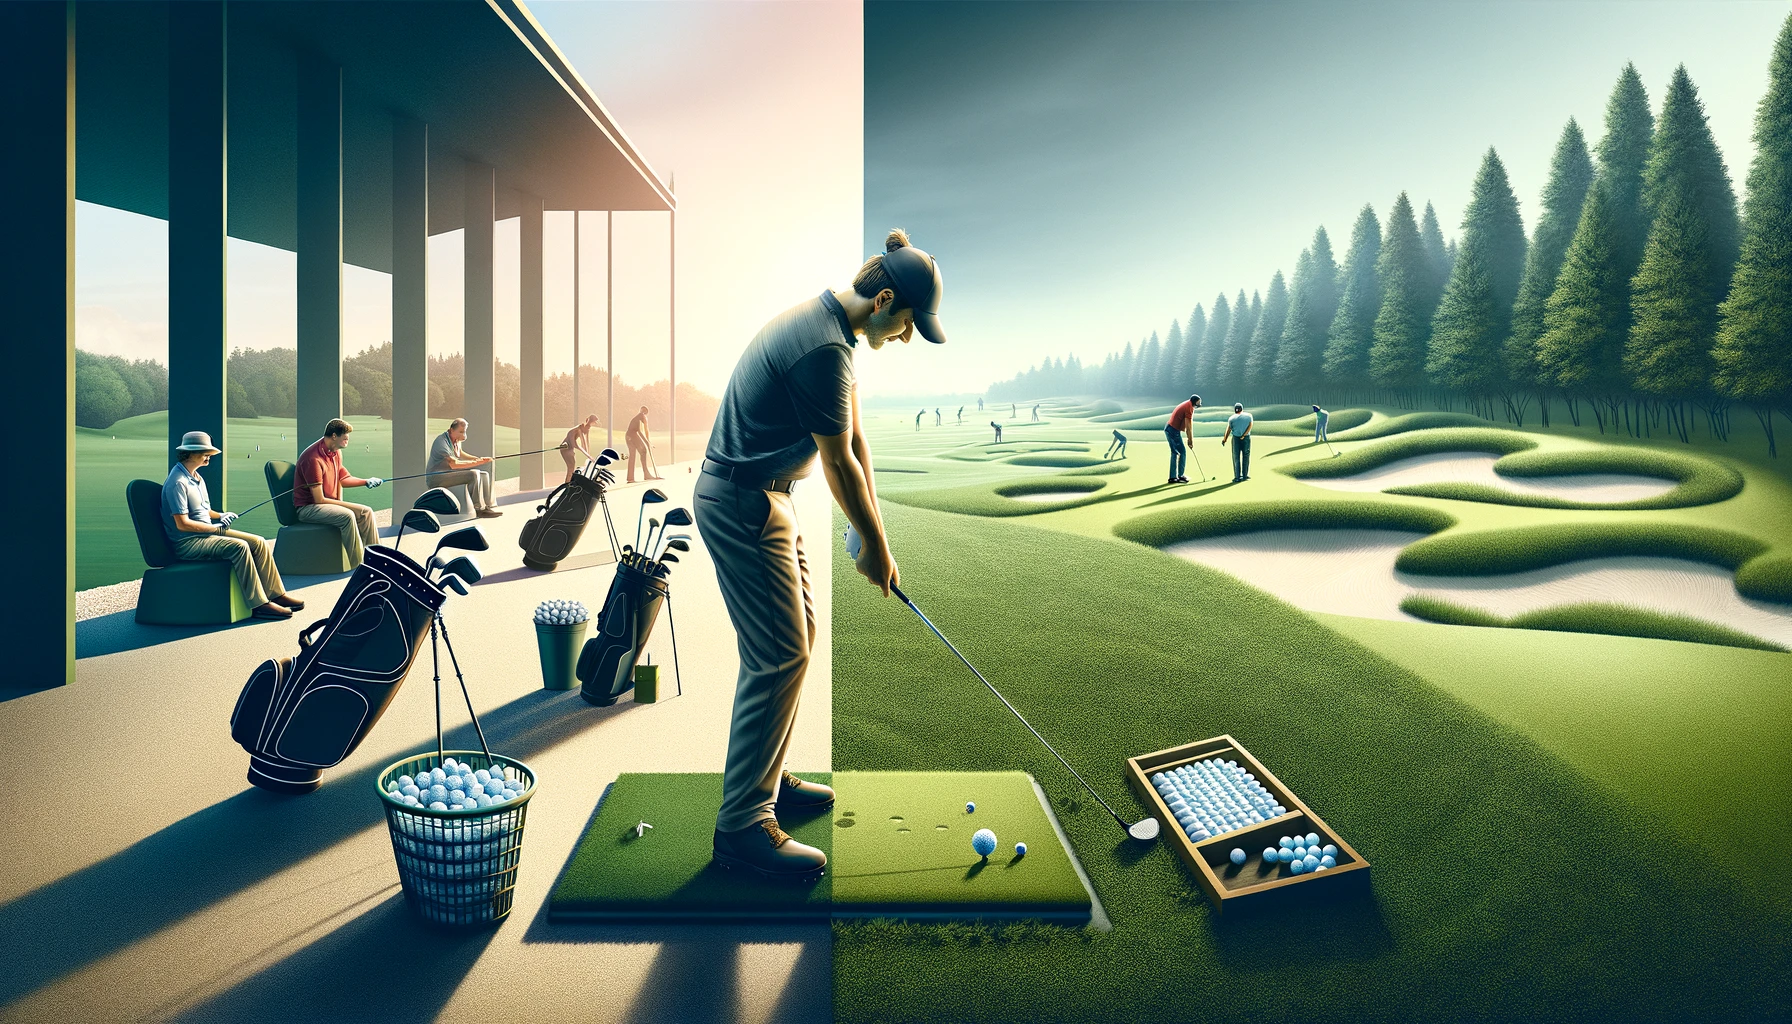 골프 연습 방법: 레인지 연습 vs. 코스 연습 비교